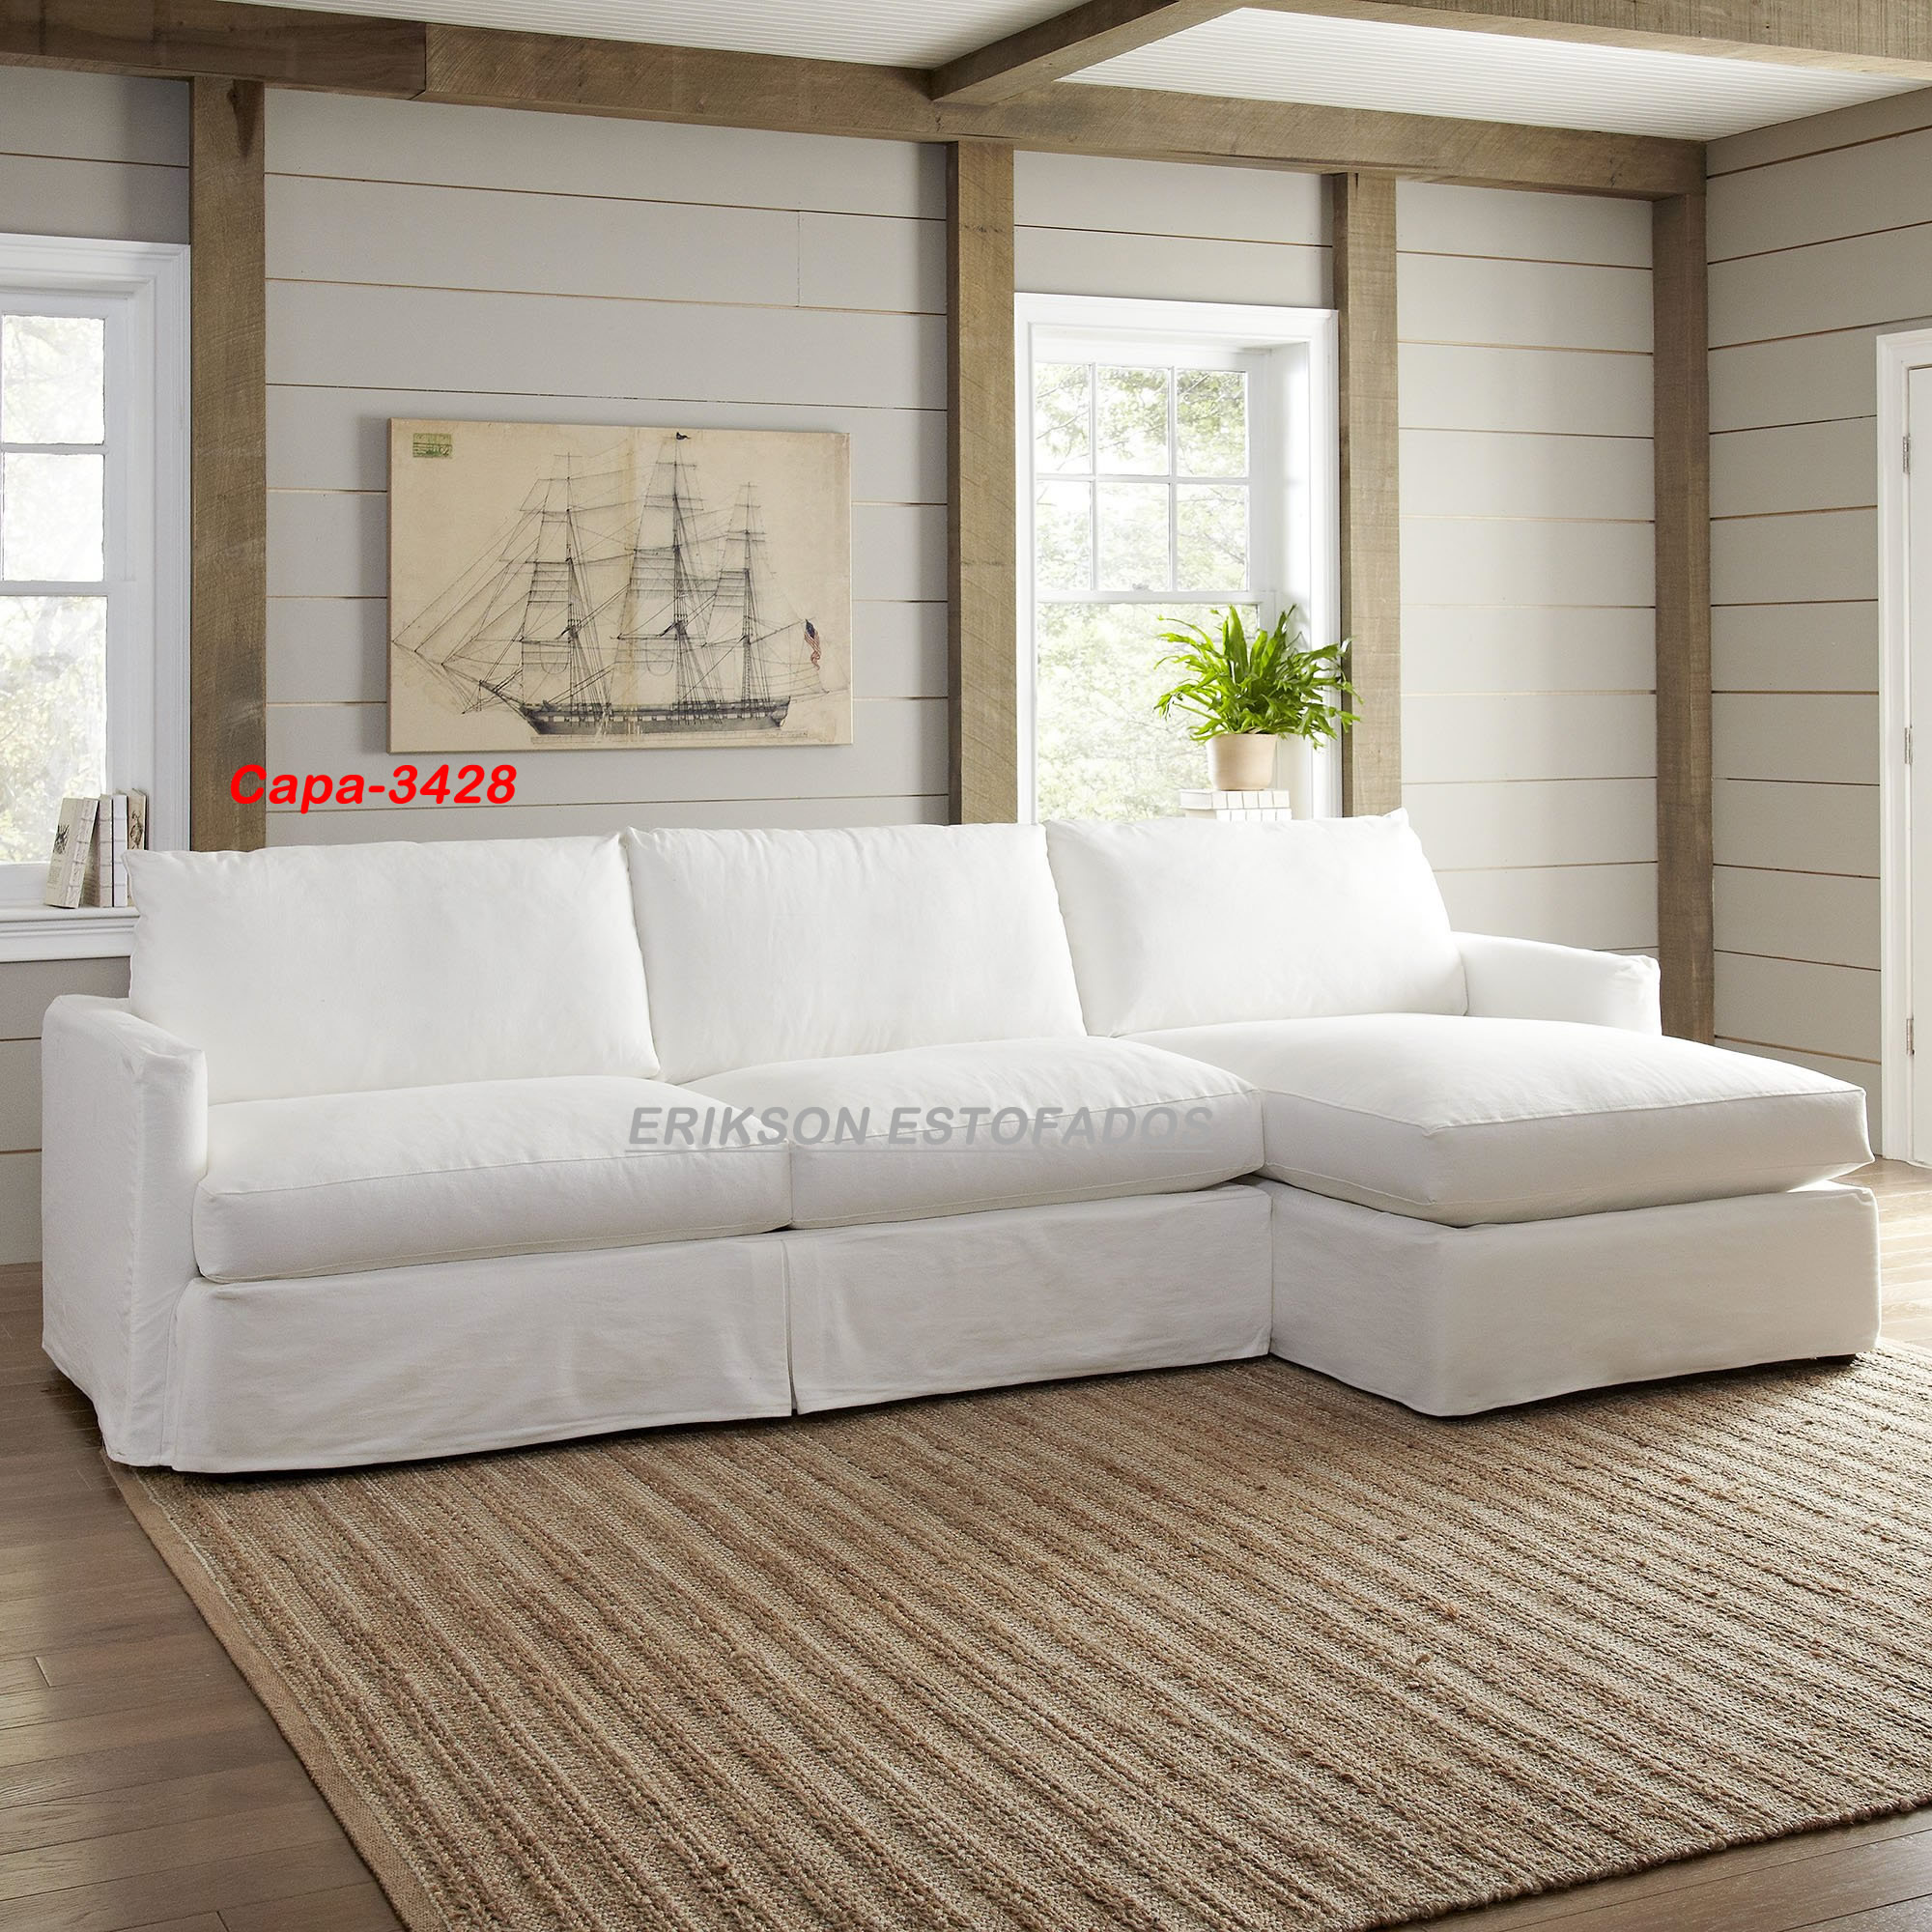 Capas de sofas - capas de sofa sob medida - capa para sofa de canto - capa  para sofá reclinavel - capa para sofá retratil | eriksonestofados.com.br